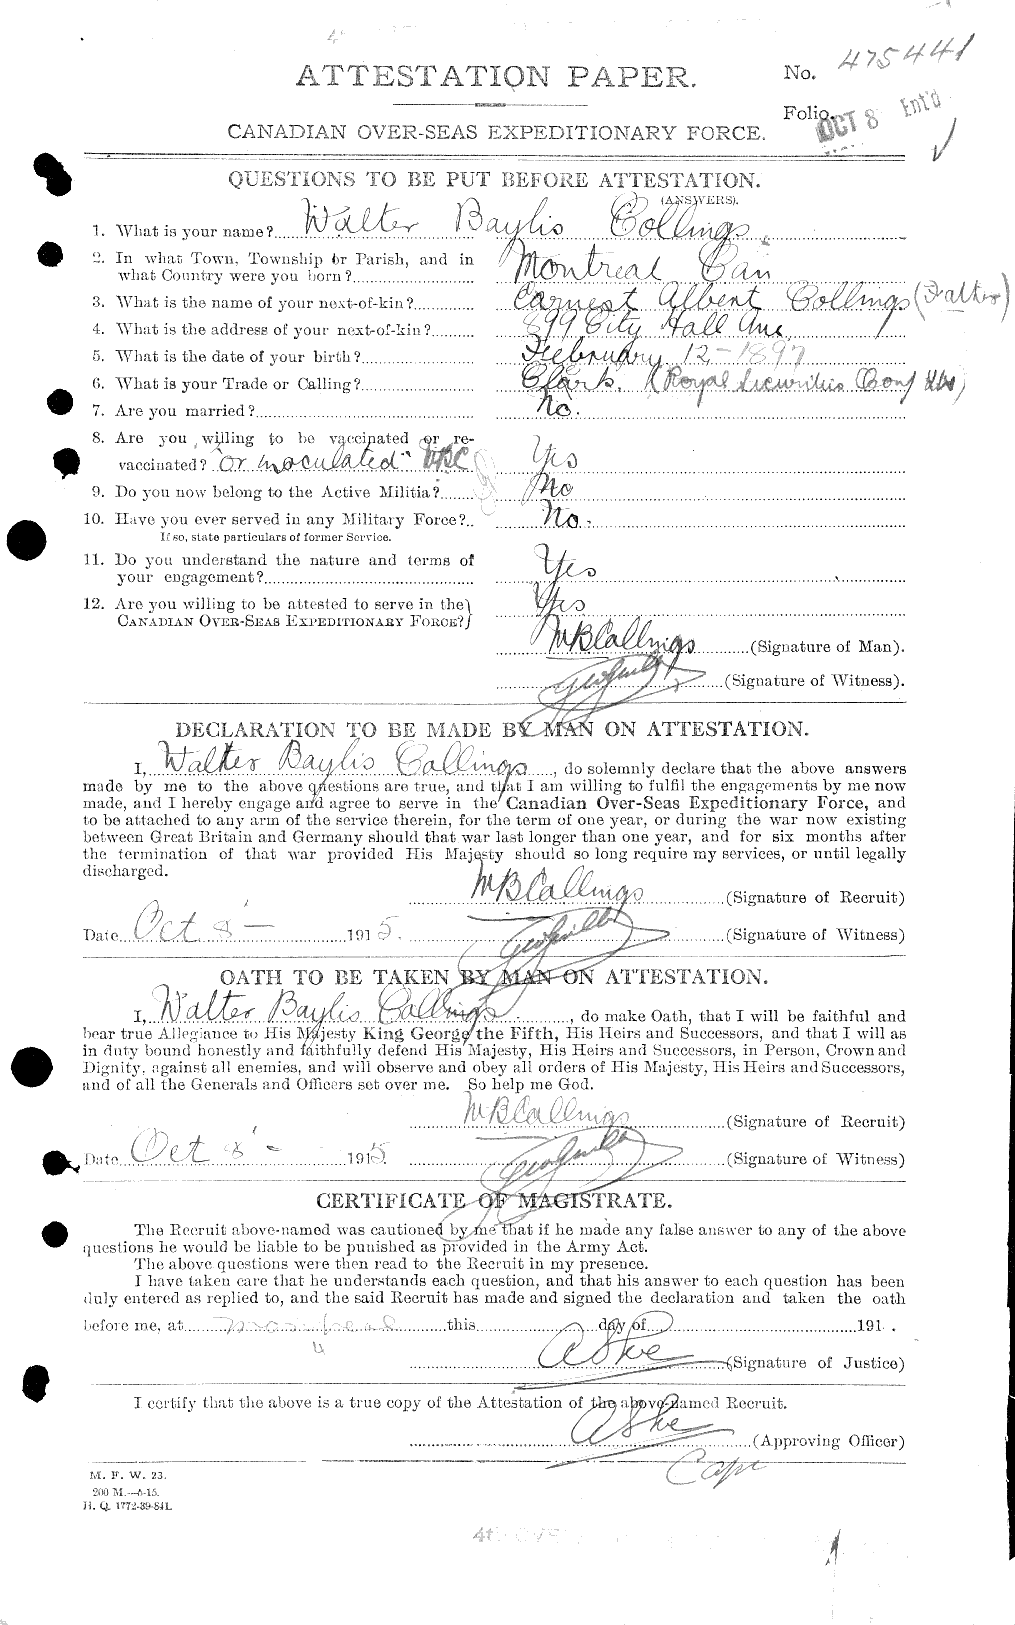 Dossiers du Personnel de la Première Guerre mondiale - CEC 040692a